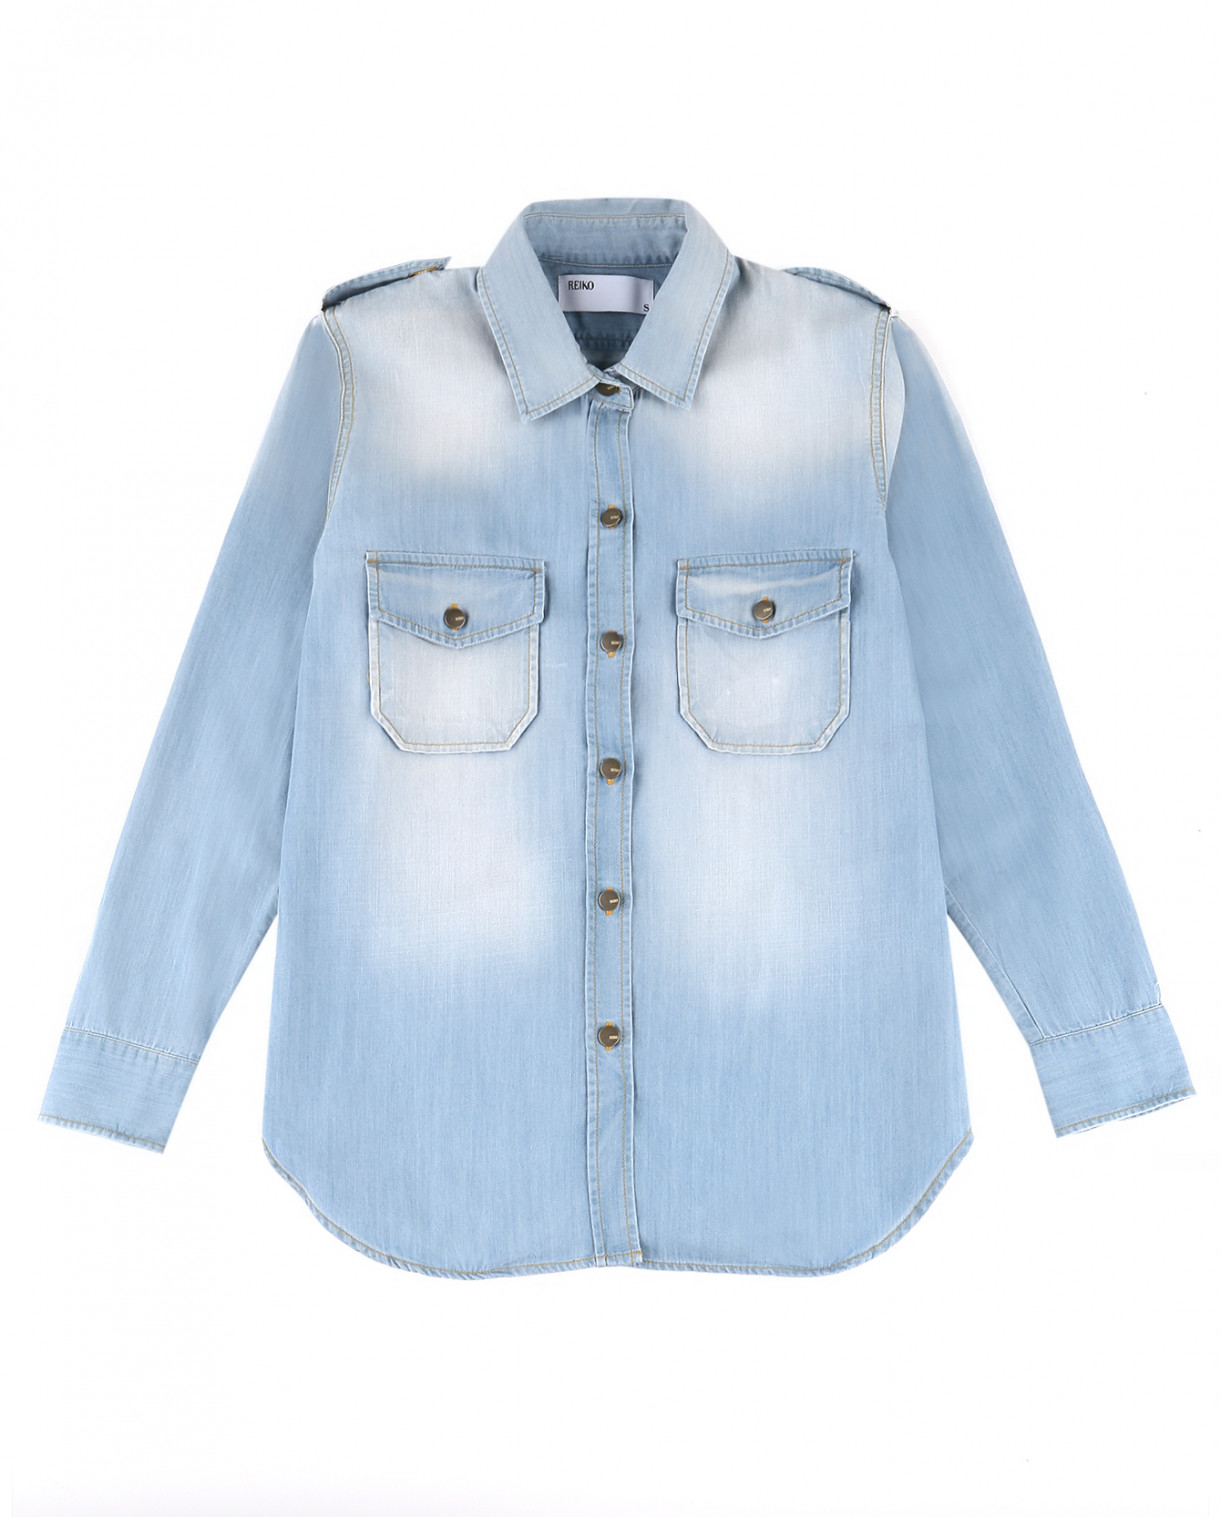 Рубашка с карманами и металлическими кнопками Reiko  –  Общий вид  – Цвет:  Синий